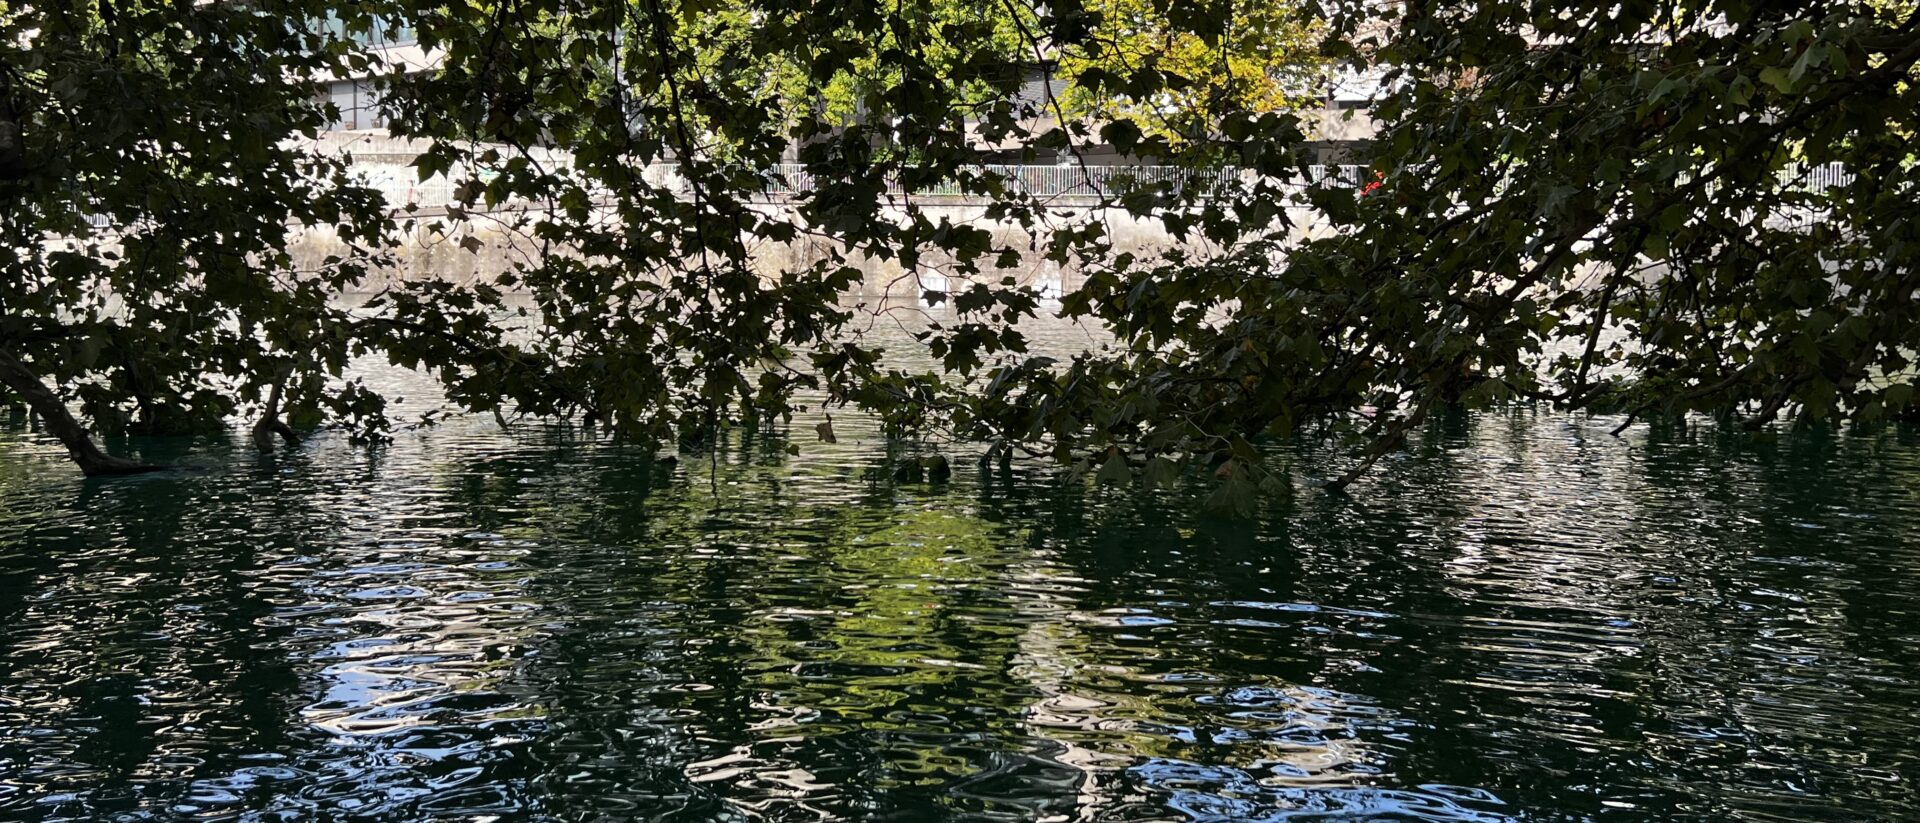 Am Fluss unter Bäumen: Ein friedlicher Ort zum Reden.